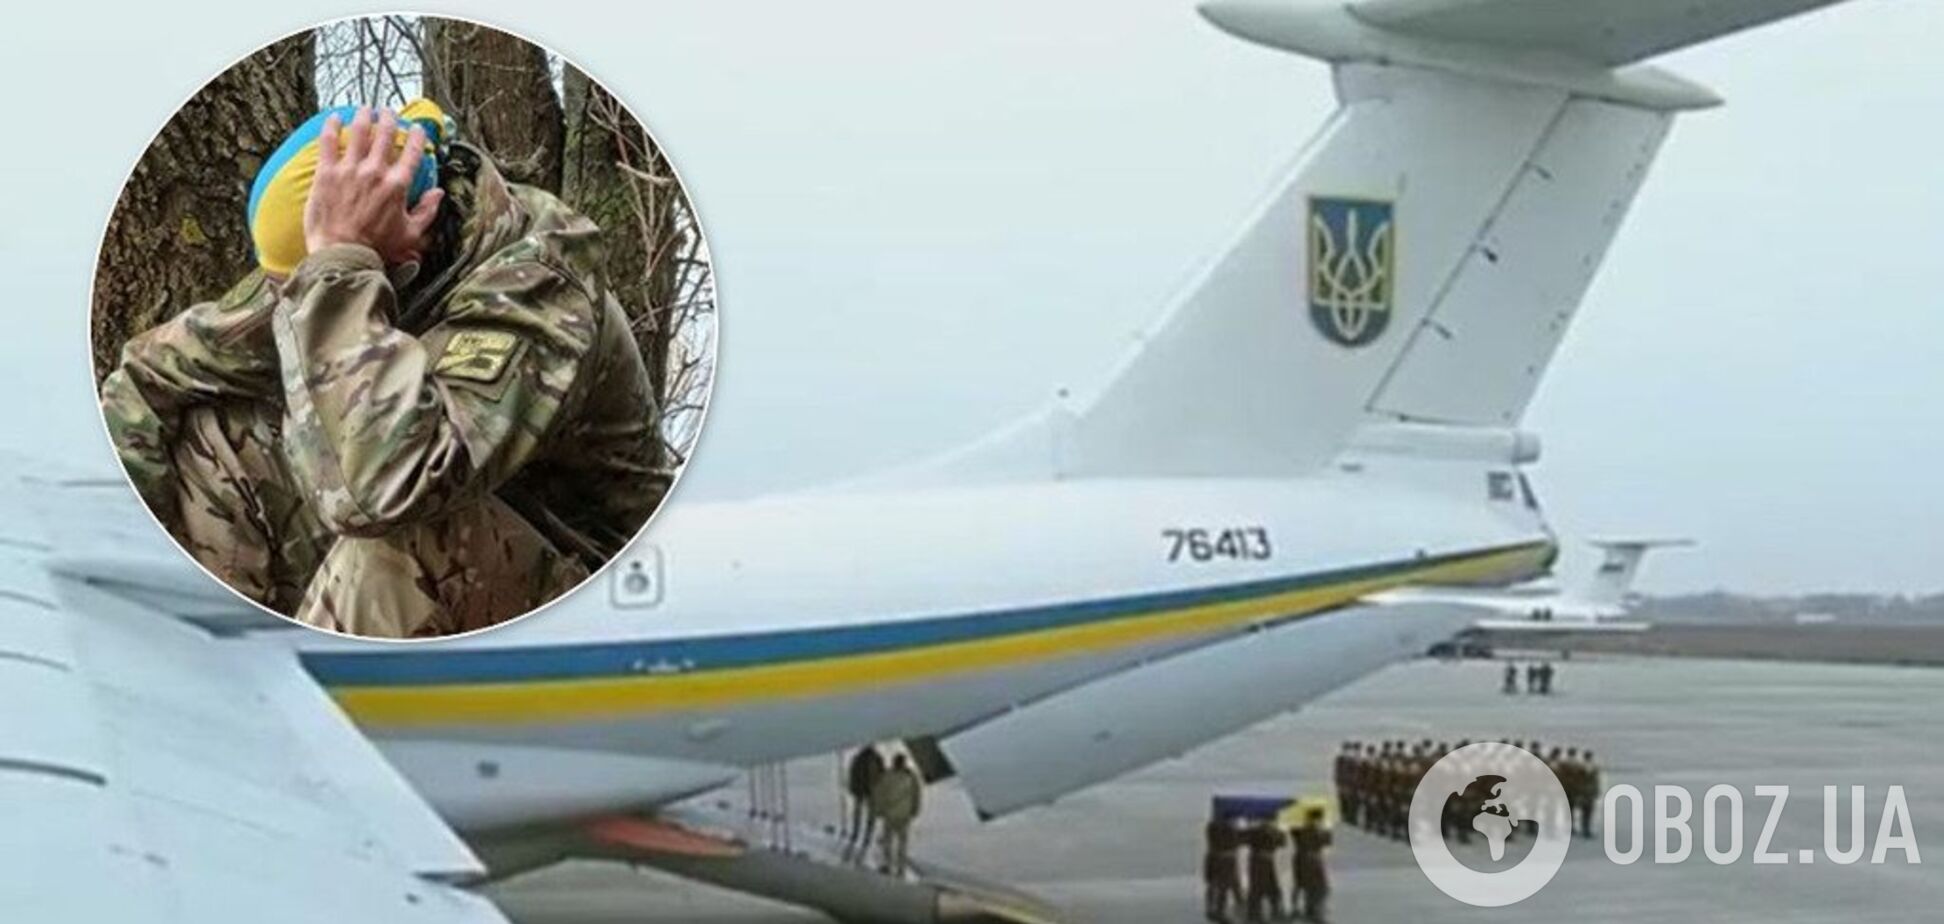 'Чувствую себя мясом!' Волонтер сравнил прощание с 'красивым самолетом' и 'грузом-200': украинцы разделились